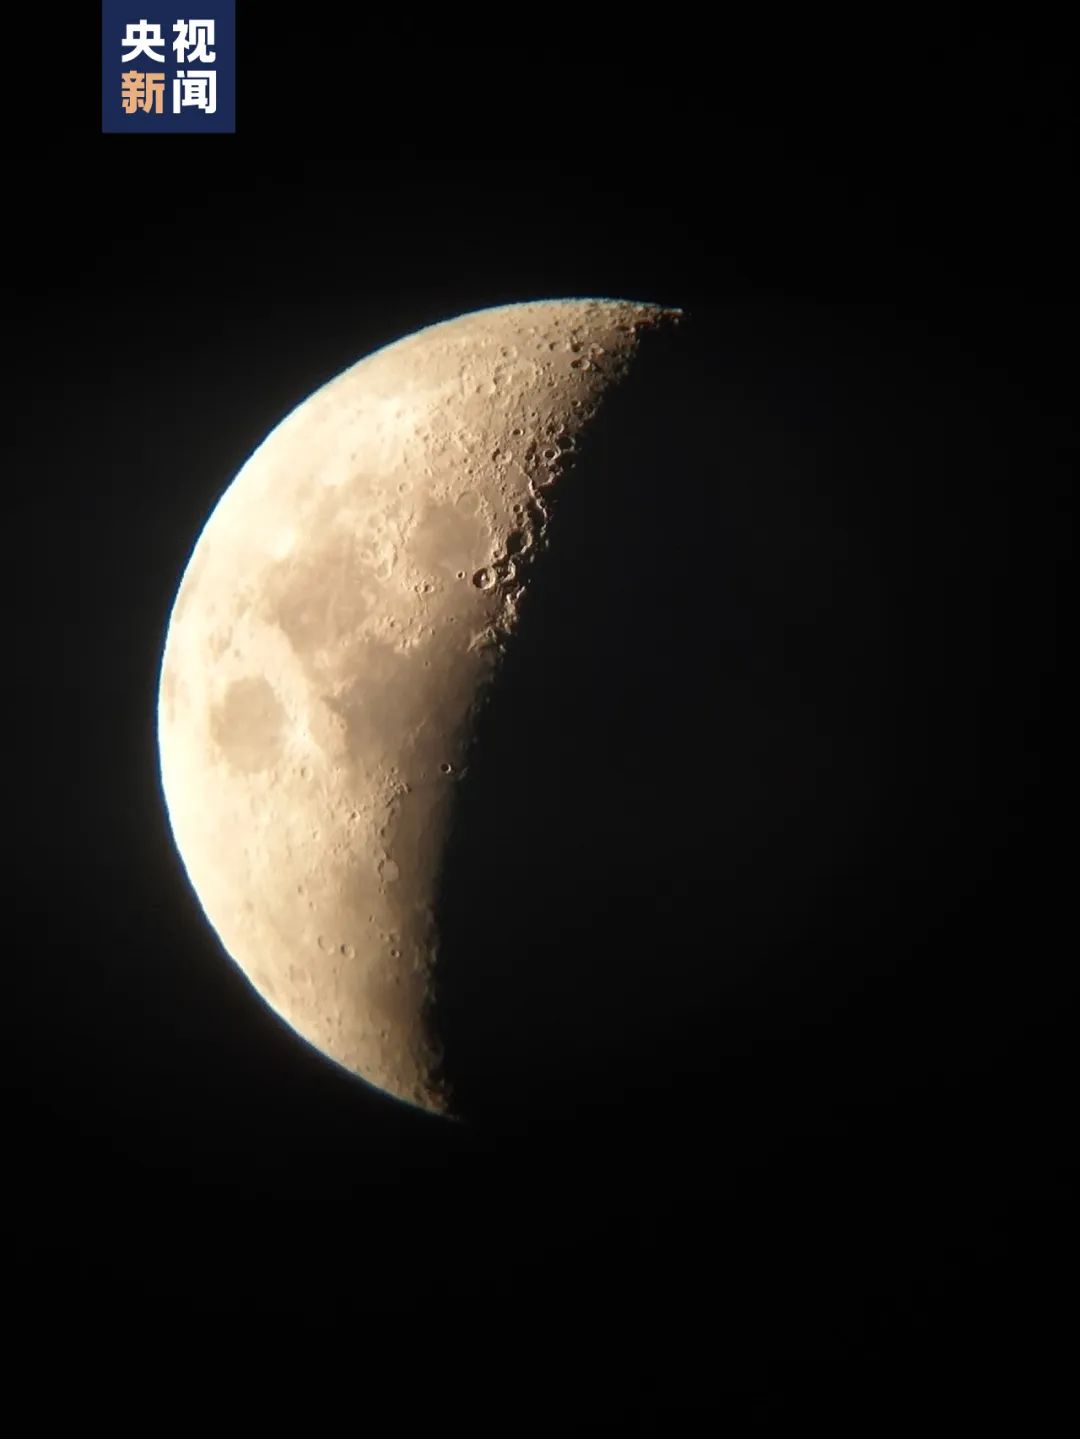 △ 王耀斌利用自制望远镜和手机拍摄到的月球表面